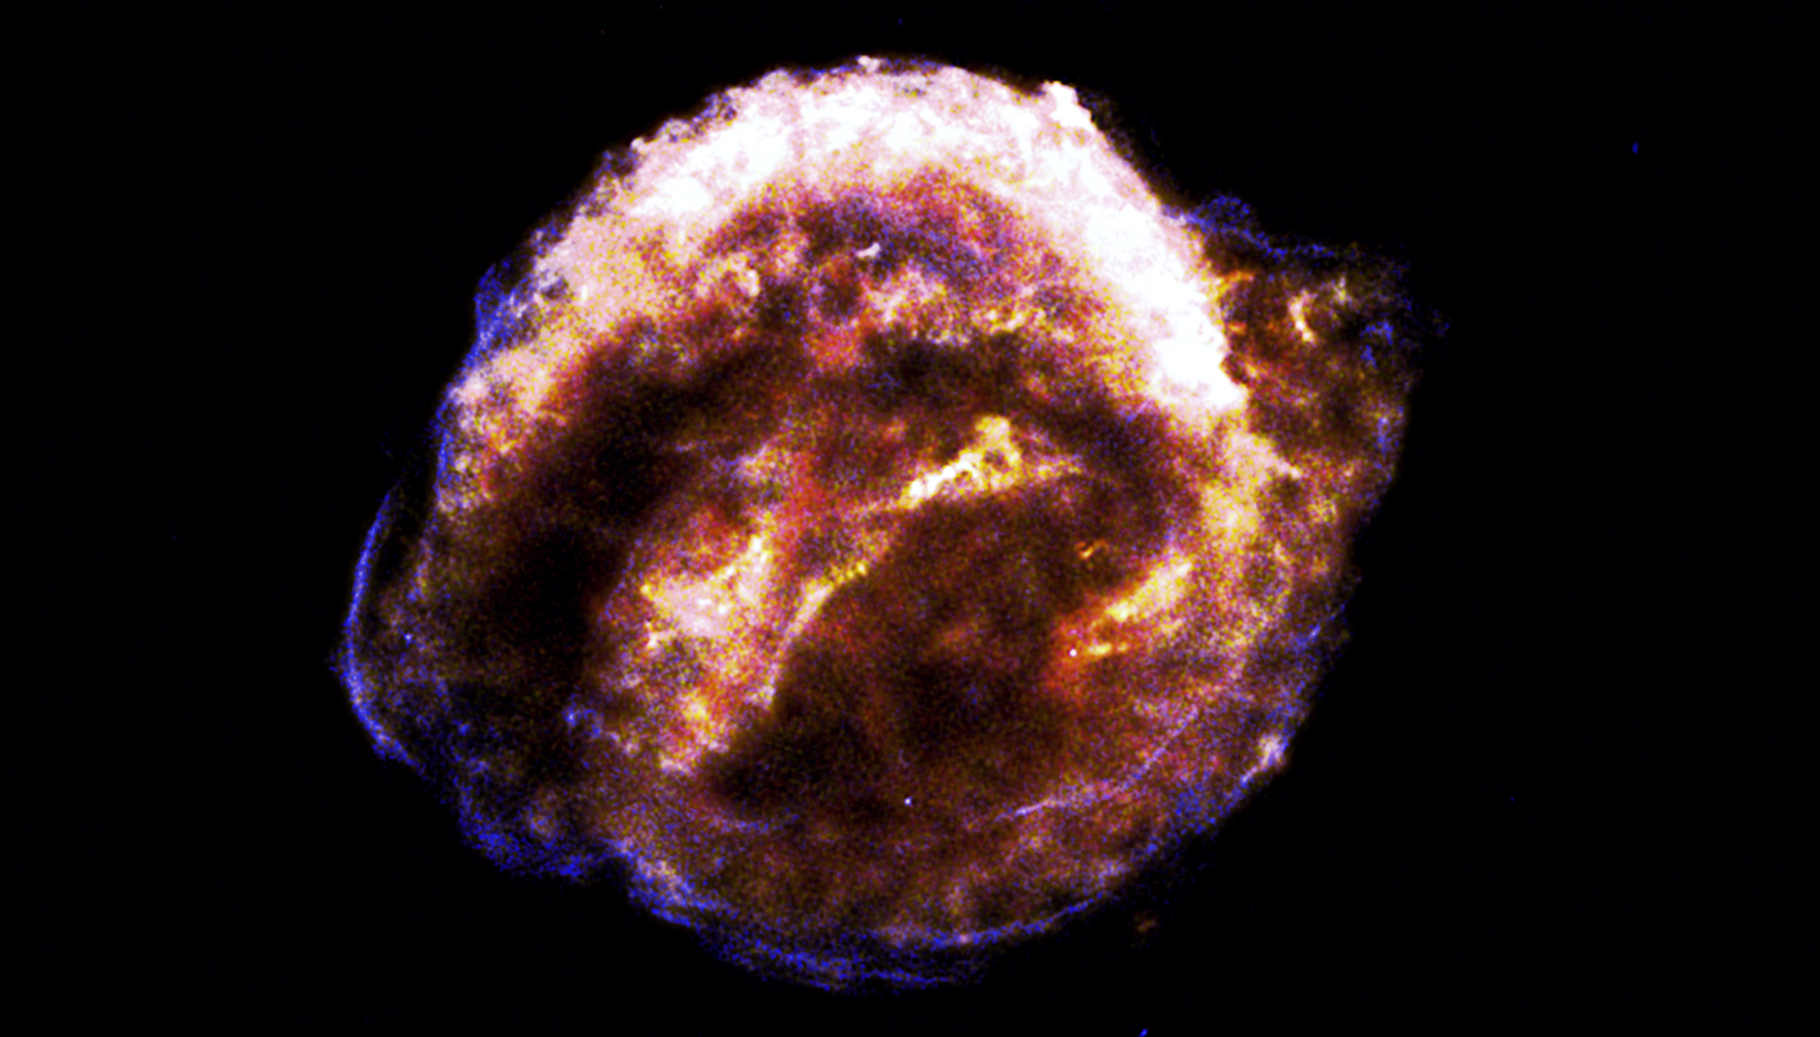 Dans ce qu'il reste de la supernova de Kepler, observée depuis la Terre il y a 400 ans, des astronomes de la Nasa ont mesuré des amas se déplaçant à des vitesses allant jusqu’à 37 millions de kilomètres par heure. © M. Millard et al., Université du Texas à Arlington, CXC, Nasa